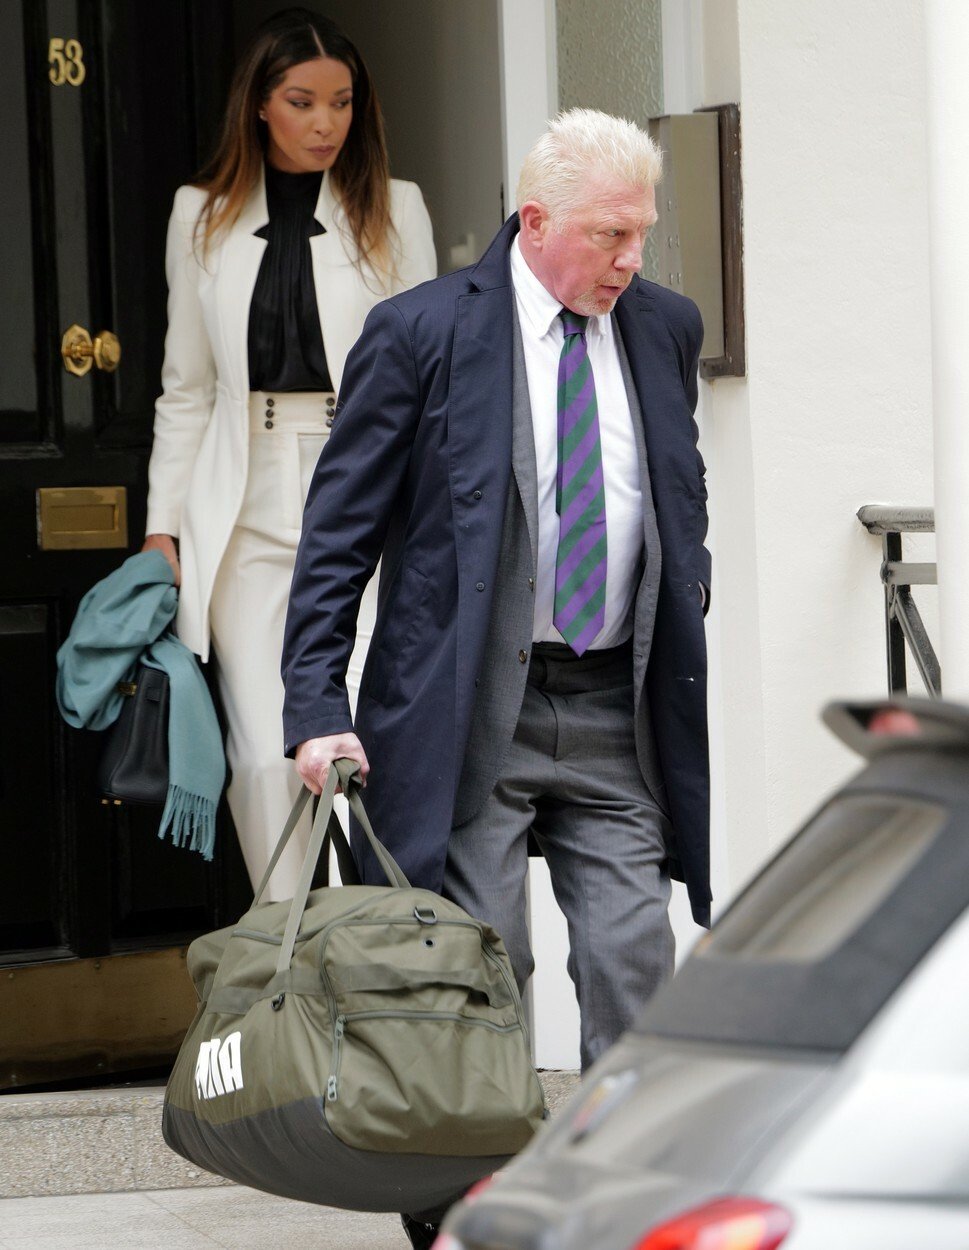 Becker při odchodu ze svého domu nesl sportovní tašku s věcmi pro pobyt ve vězení